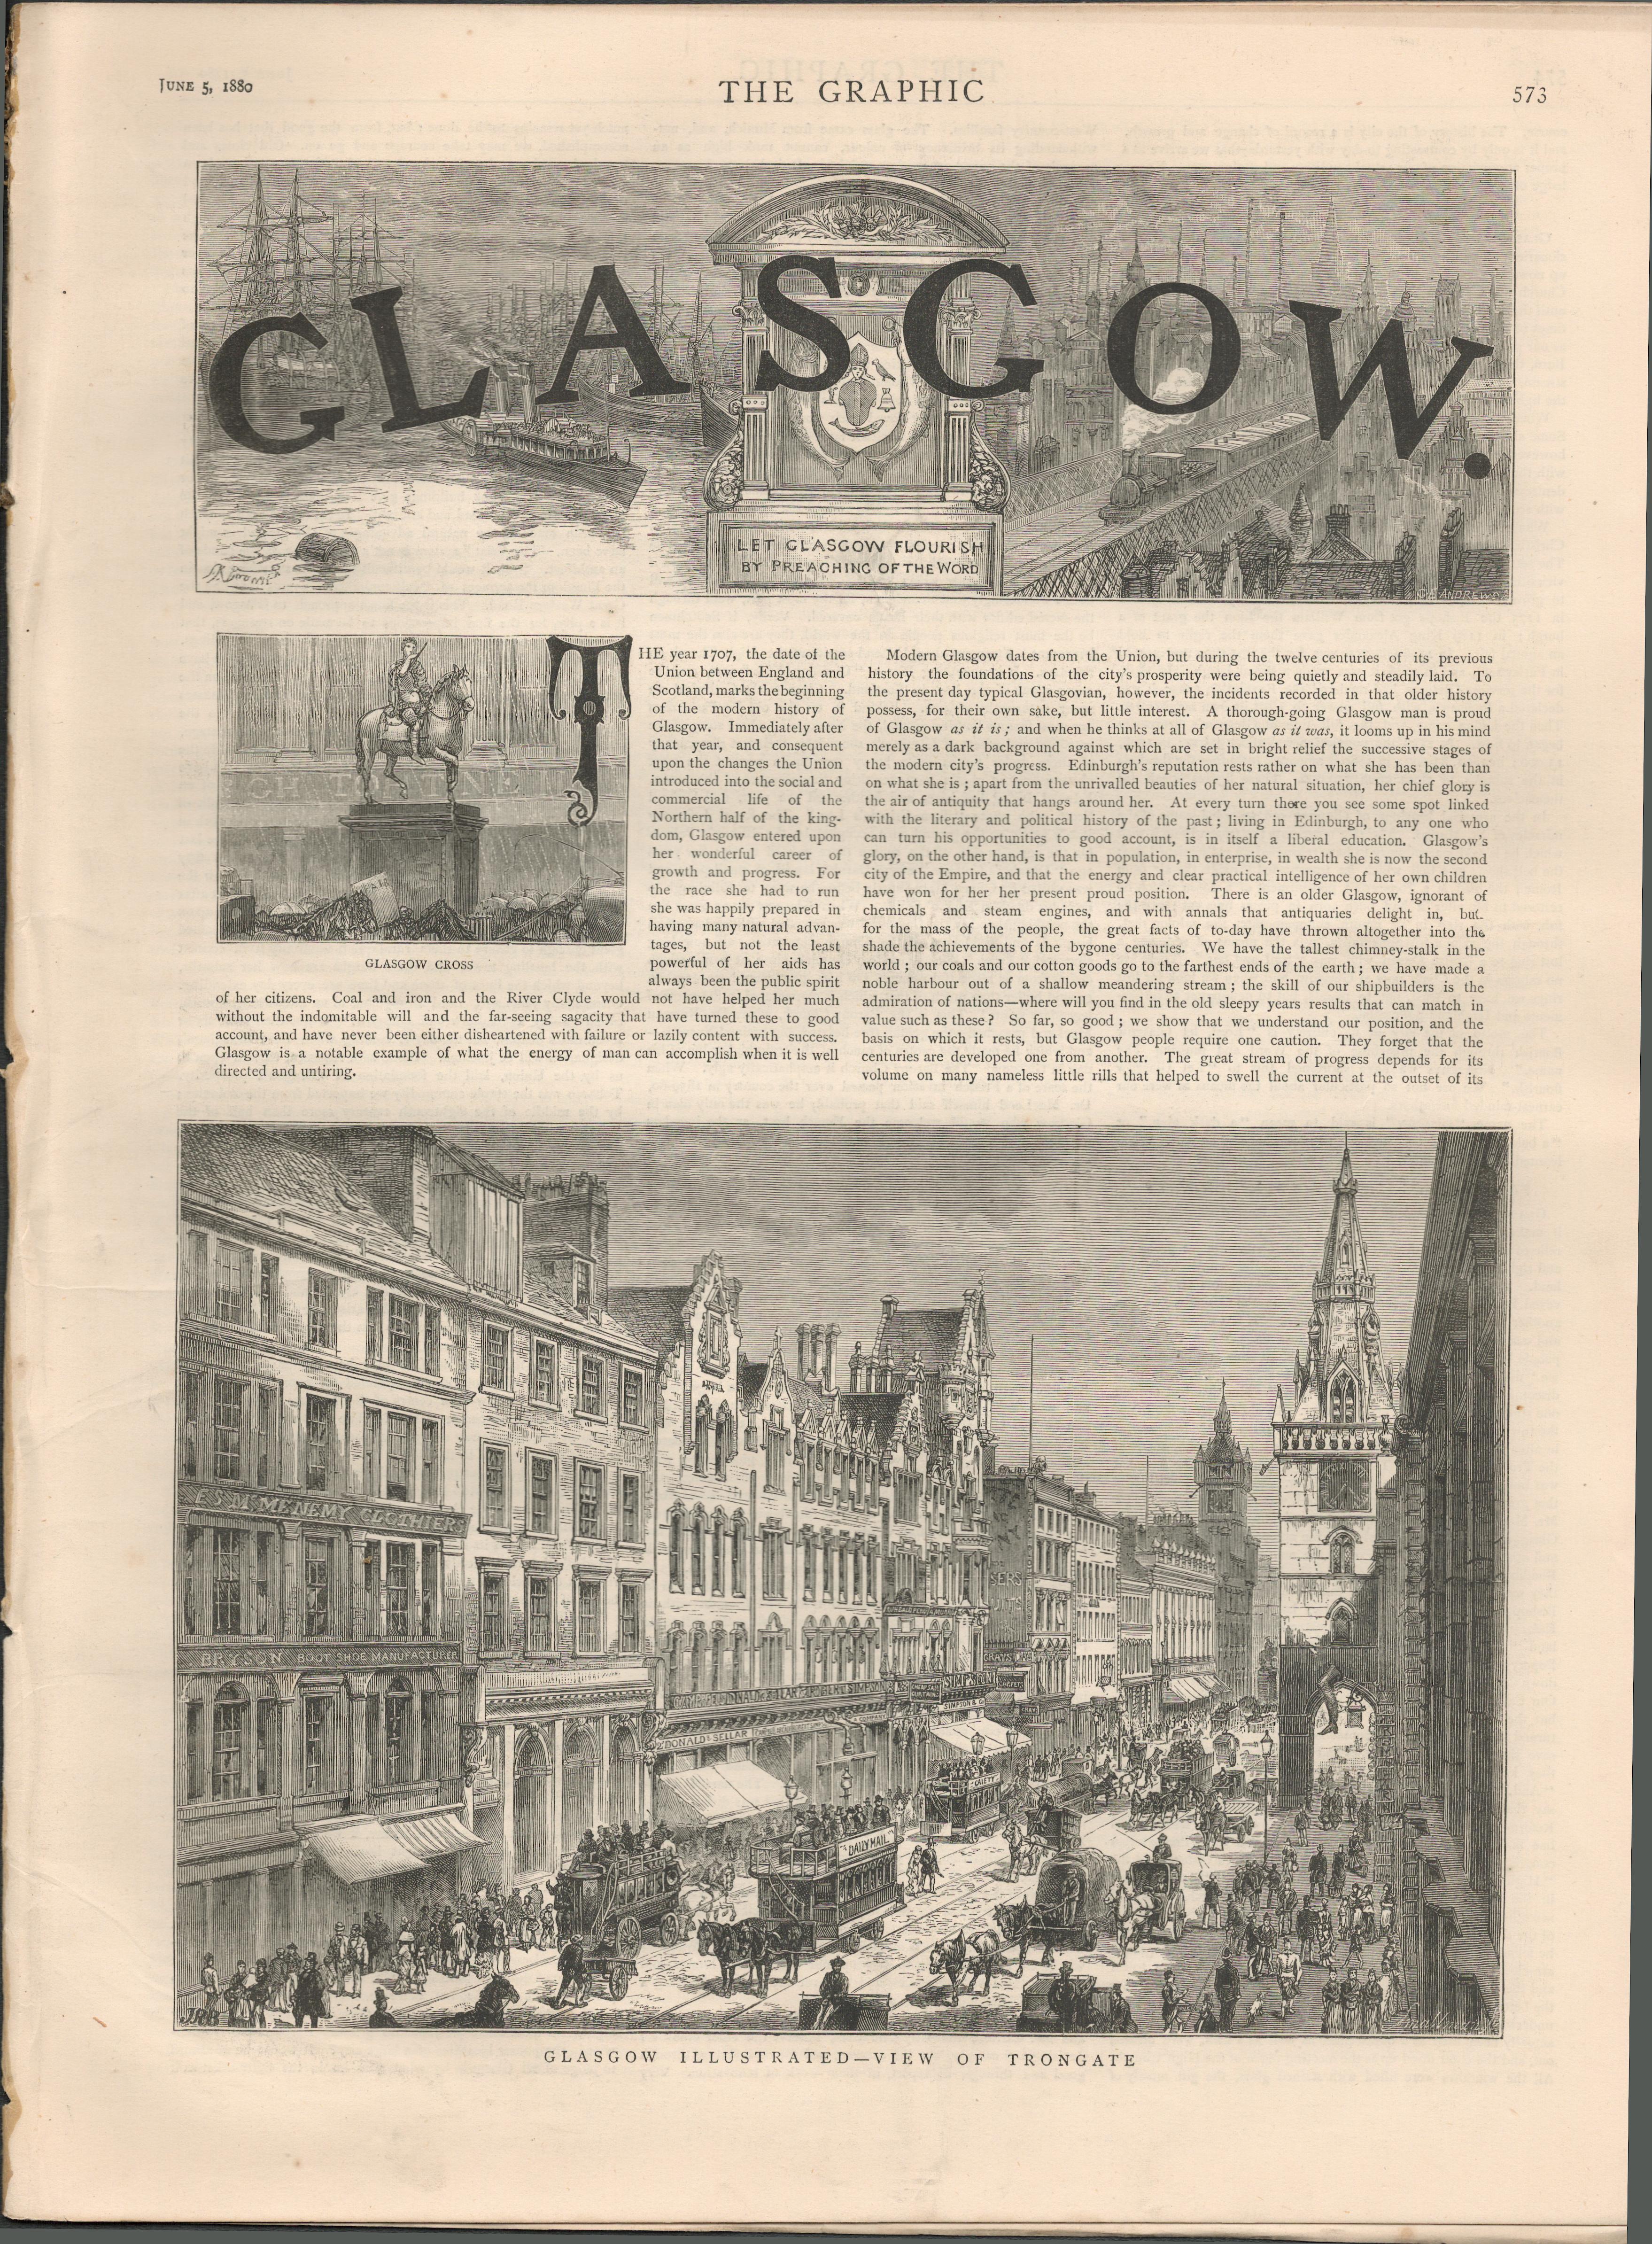 Glasgow City Scotland 1880 Antique Supplement Newspaper.